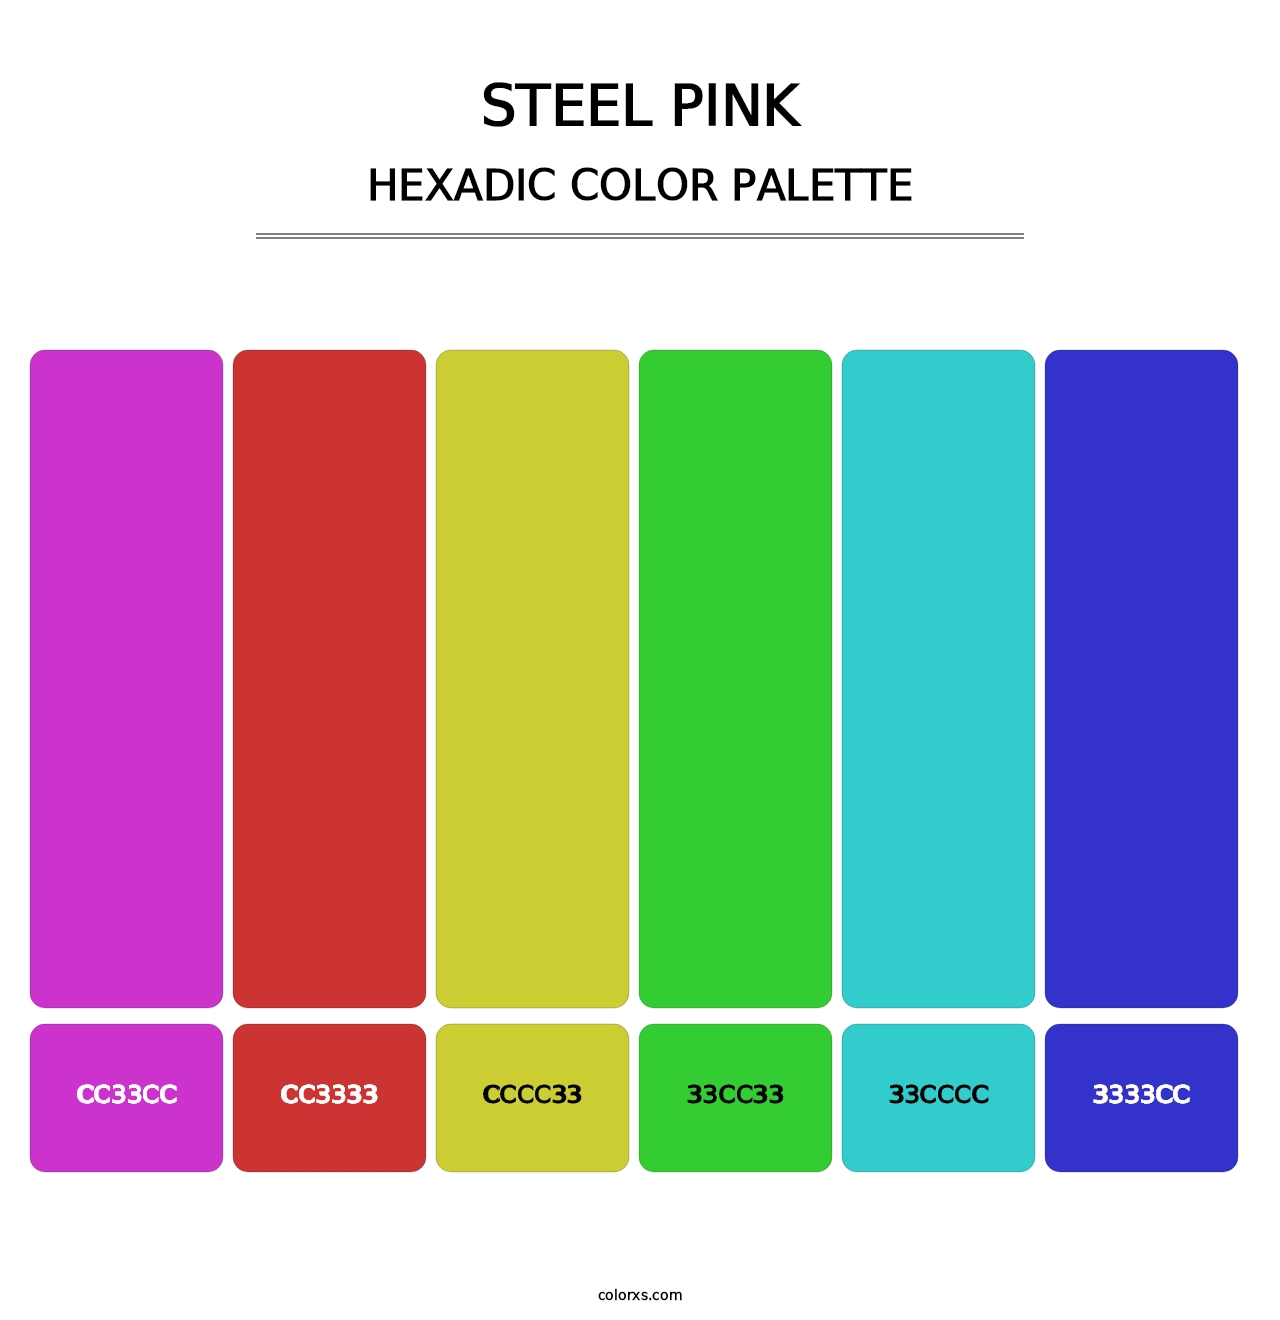 Steel Pink - Hexadic Color Palette